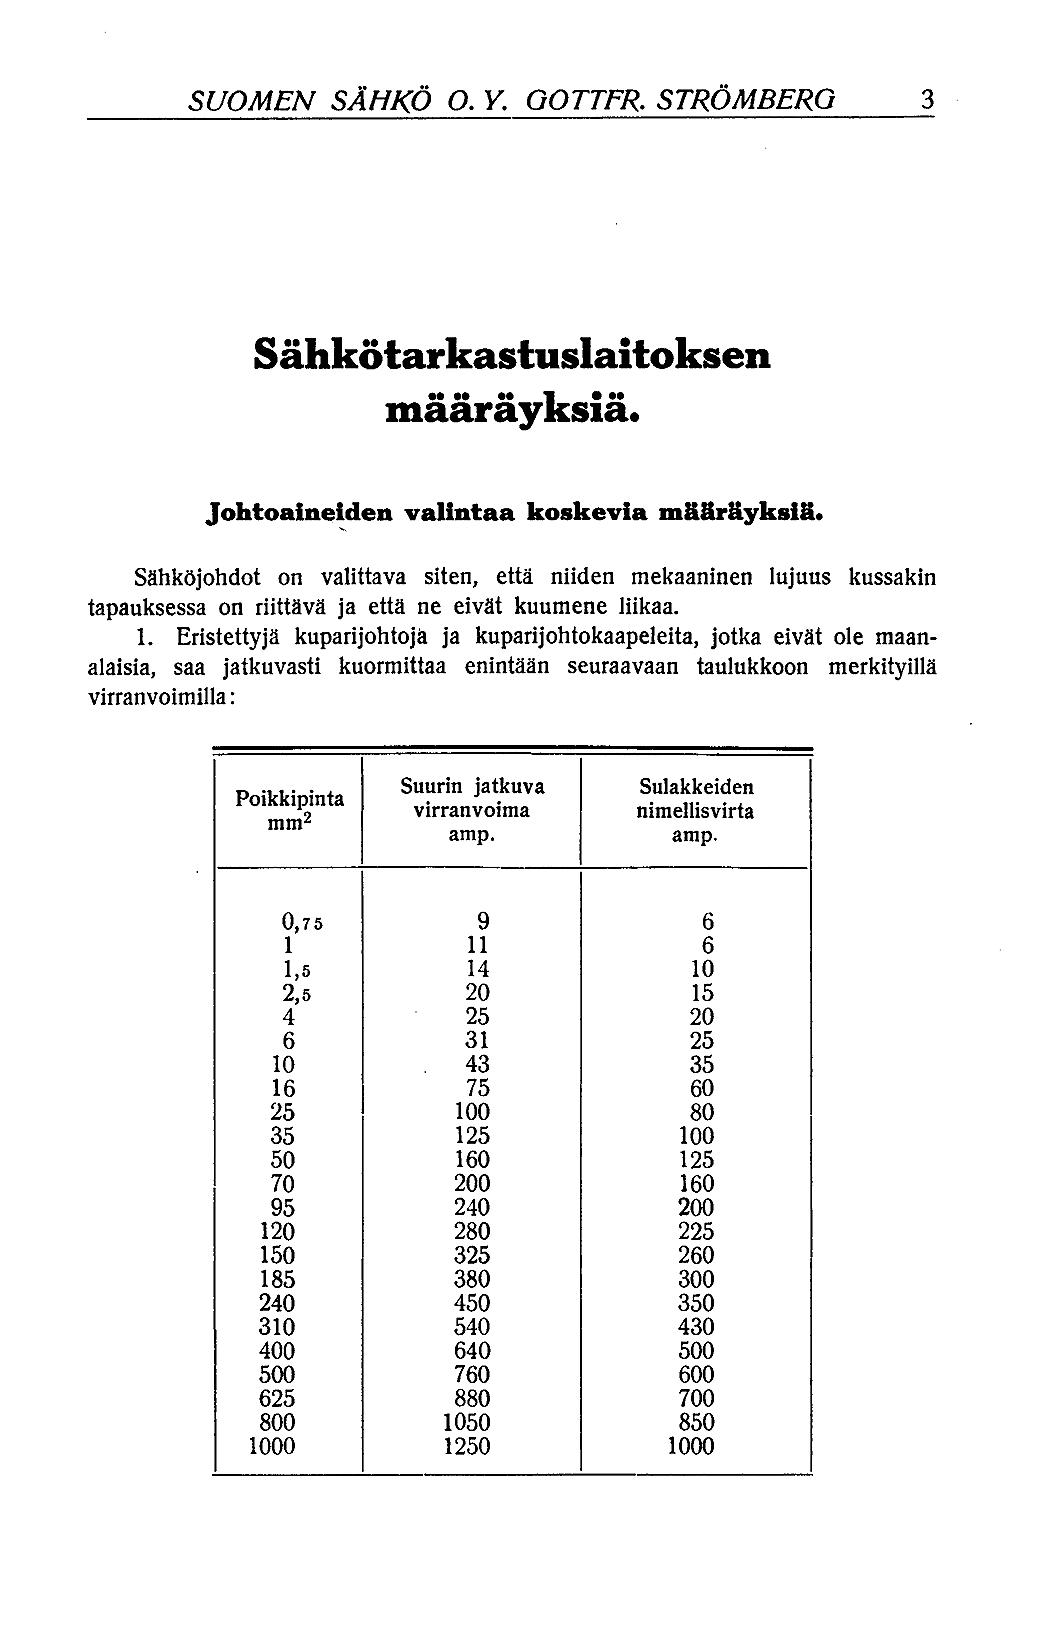 Suomen Sähkö Osakeyhtiö Gottfr. Strömberg, Helsinki - Digitaaliset  aineistot - Kansalliskirjasto